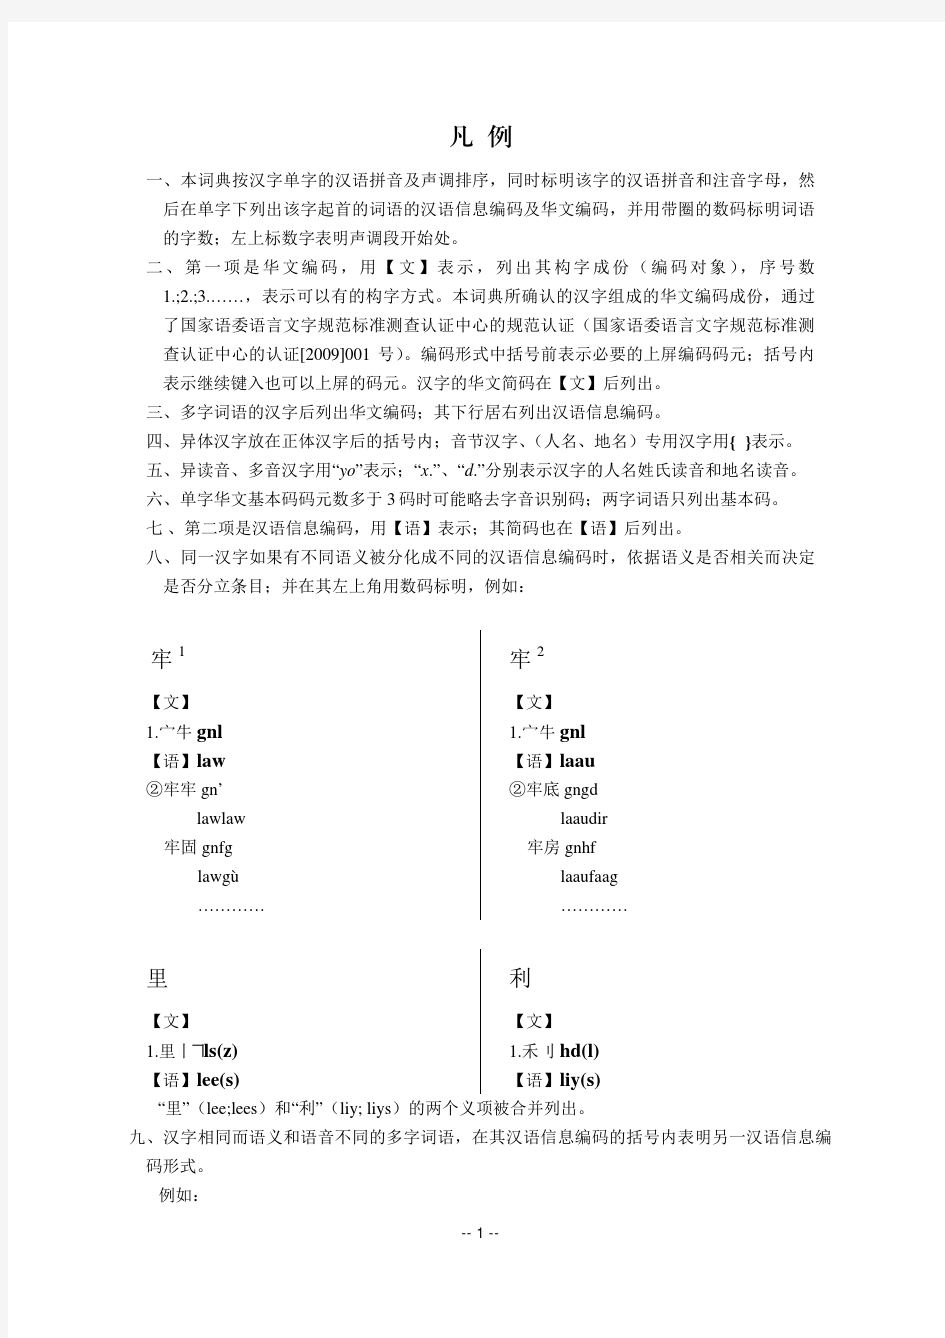 现代汉语常用字词信息编码对照词典凡例